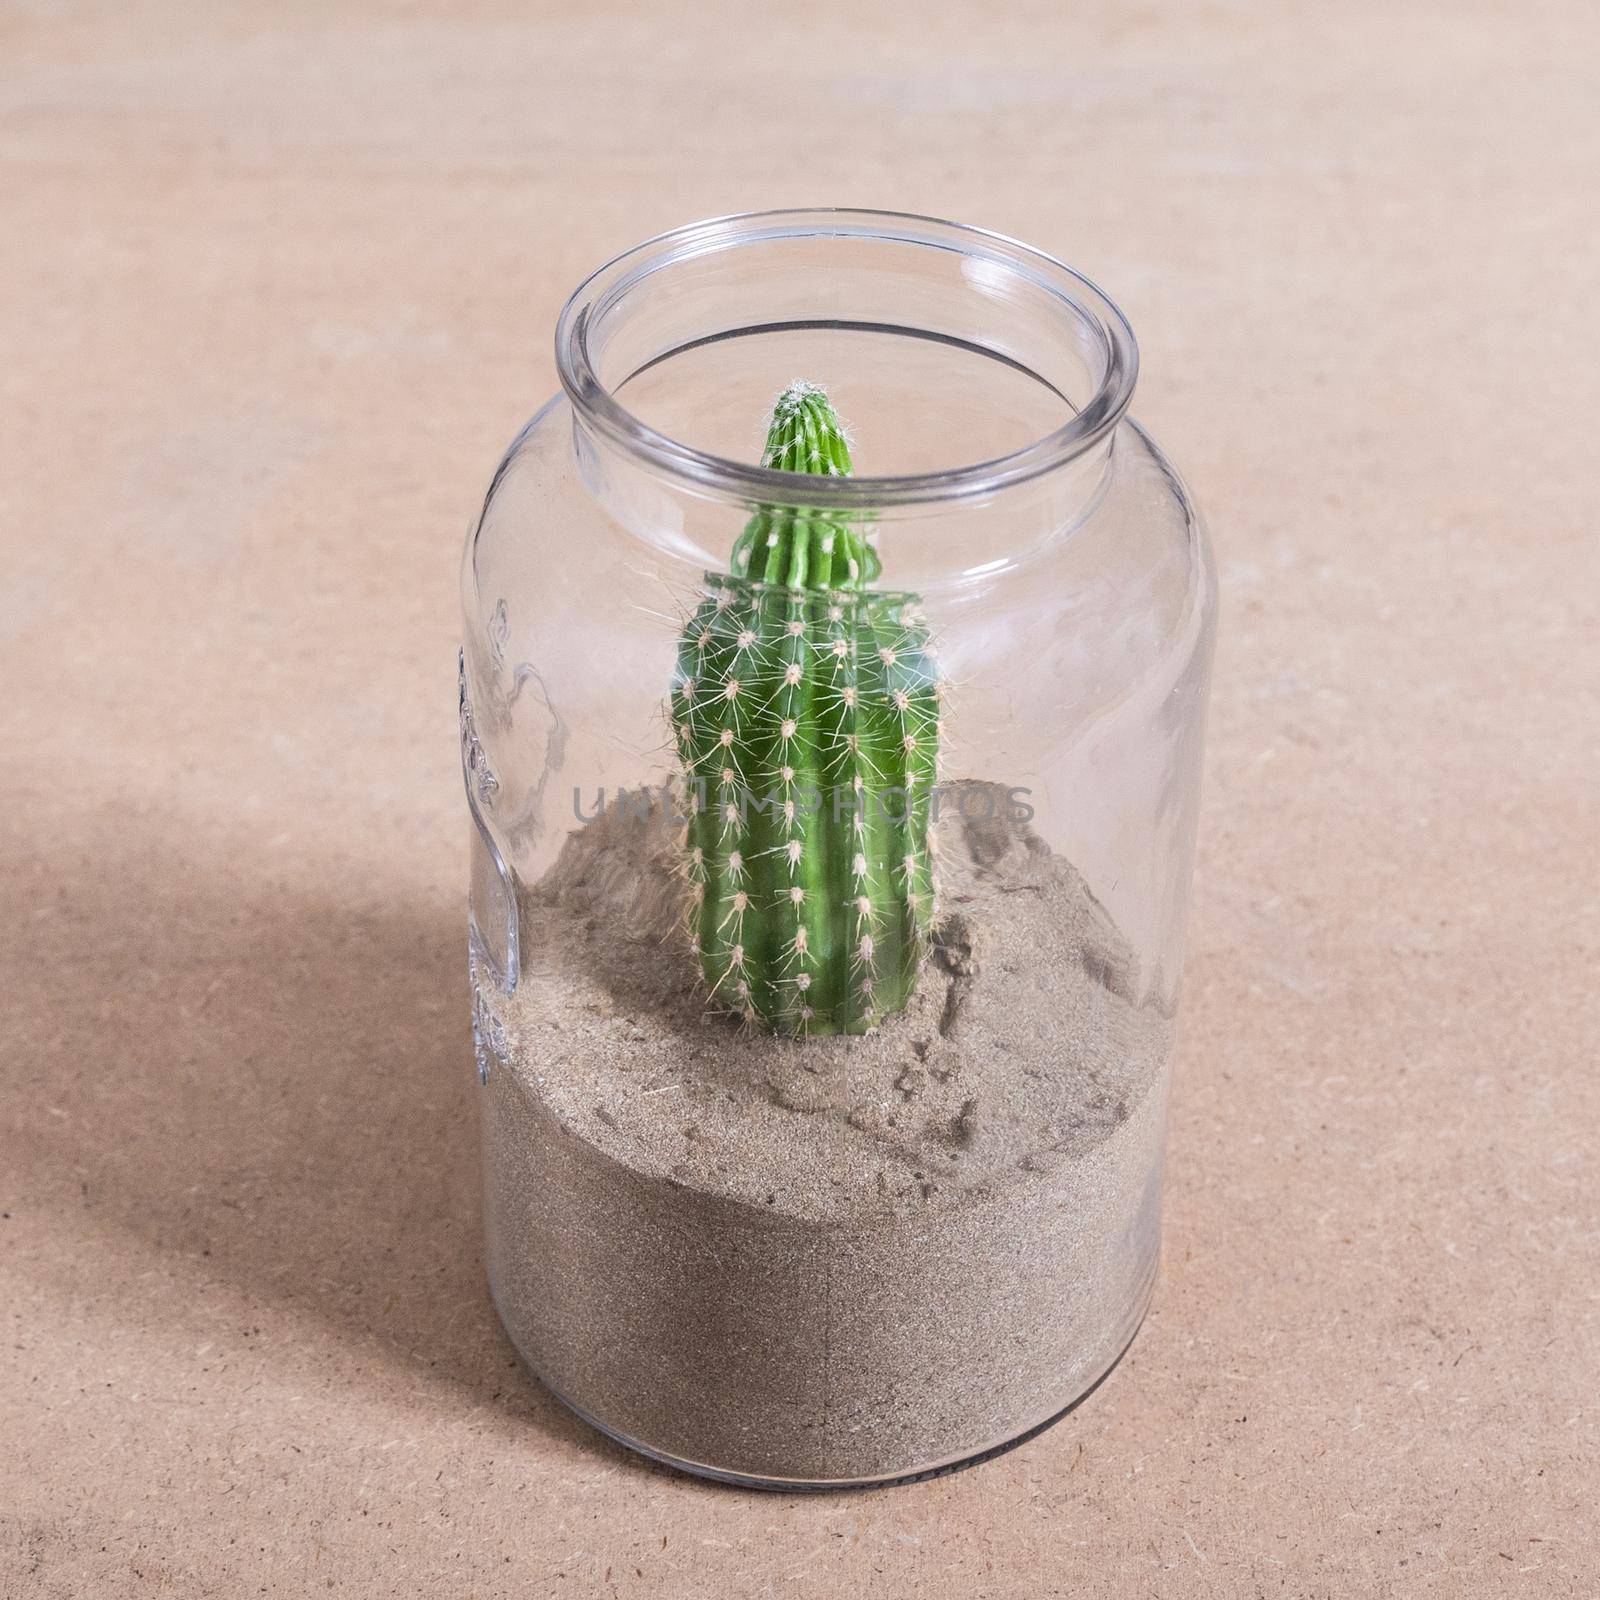 Armatocereus godingianus with cactus in the glass jar